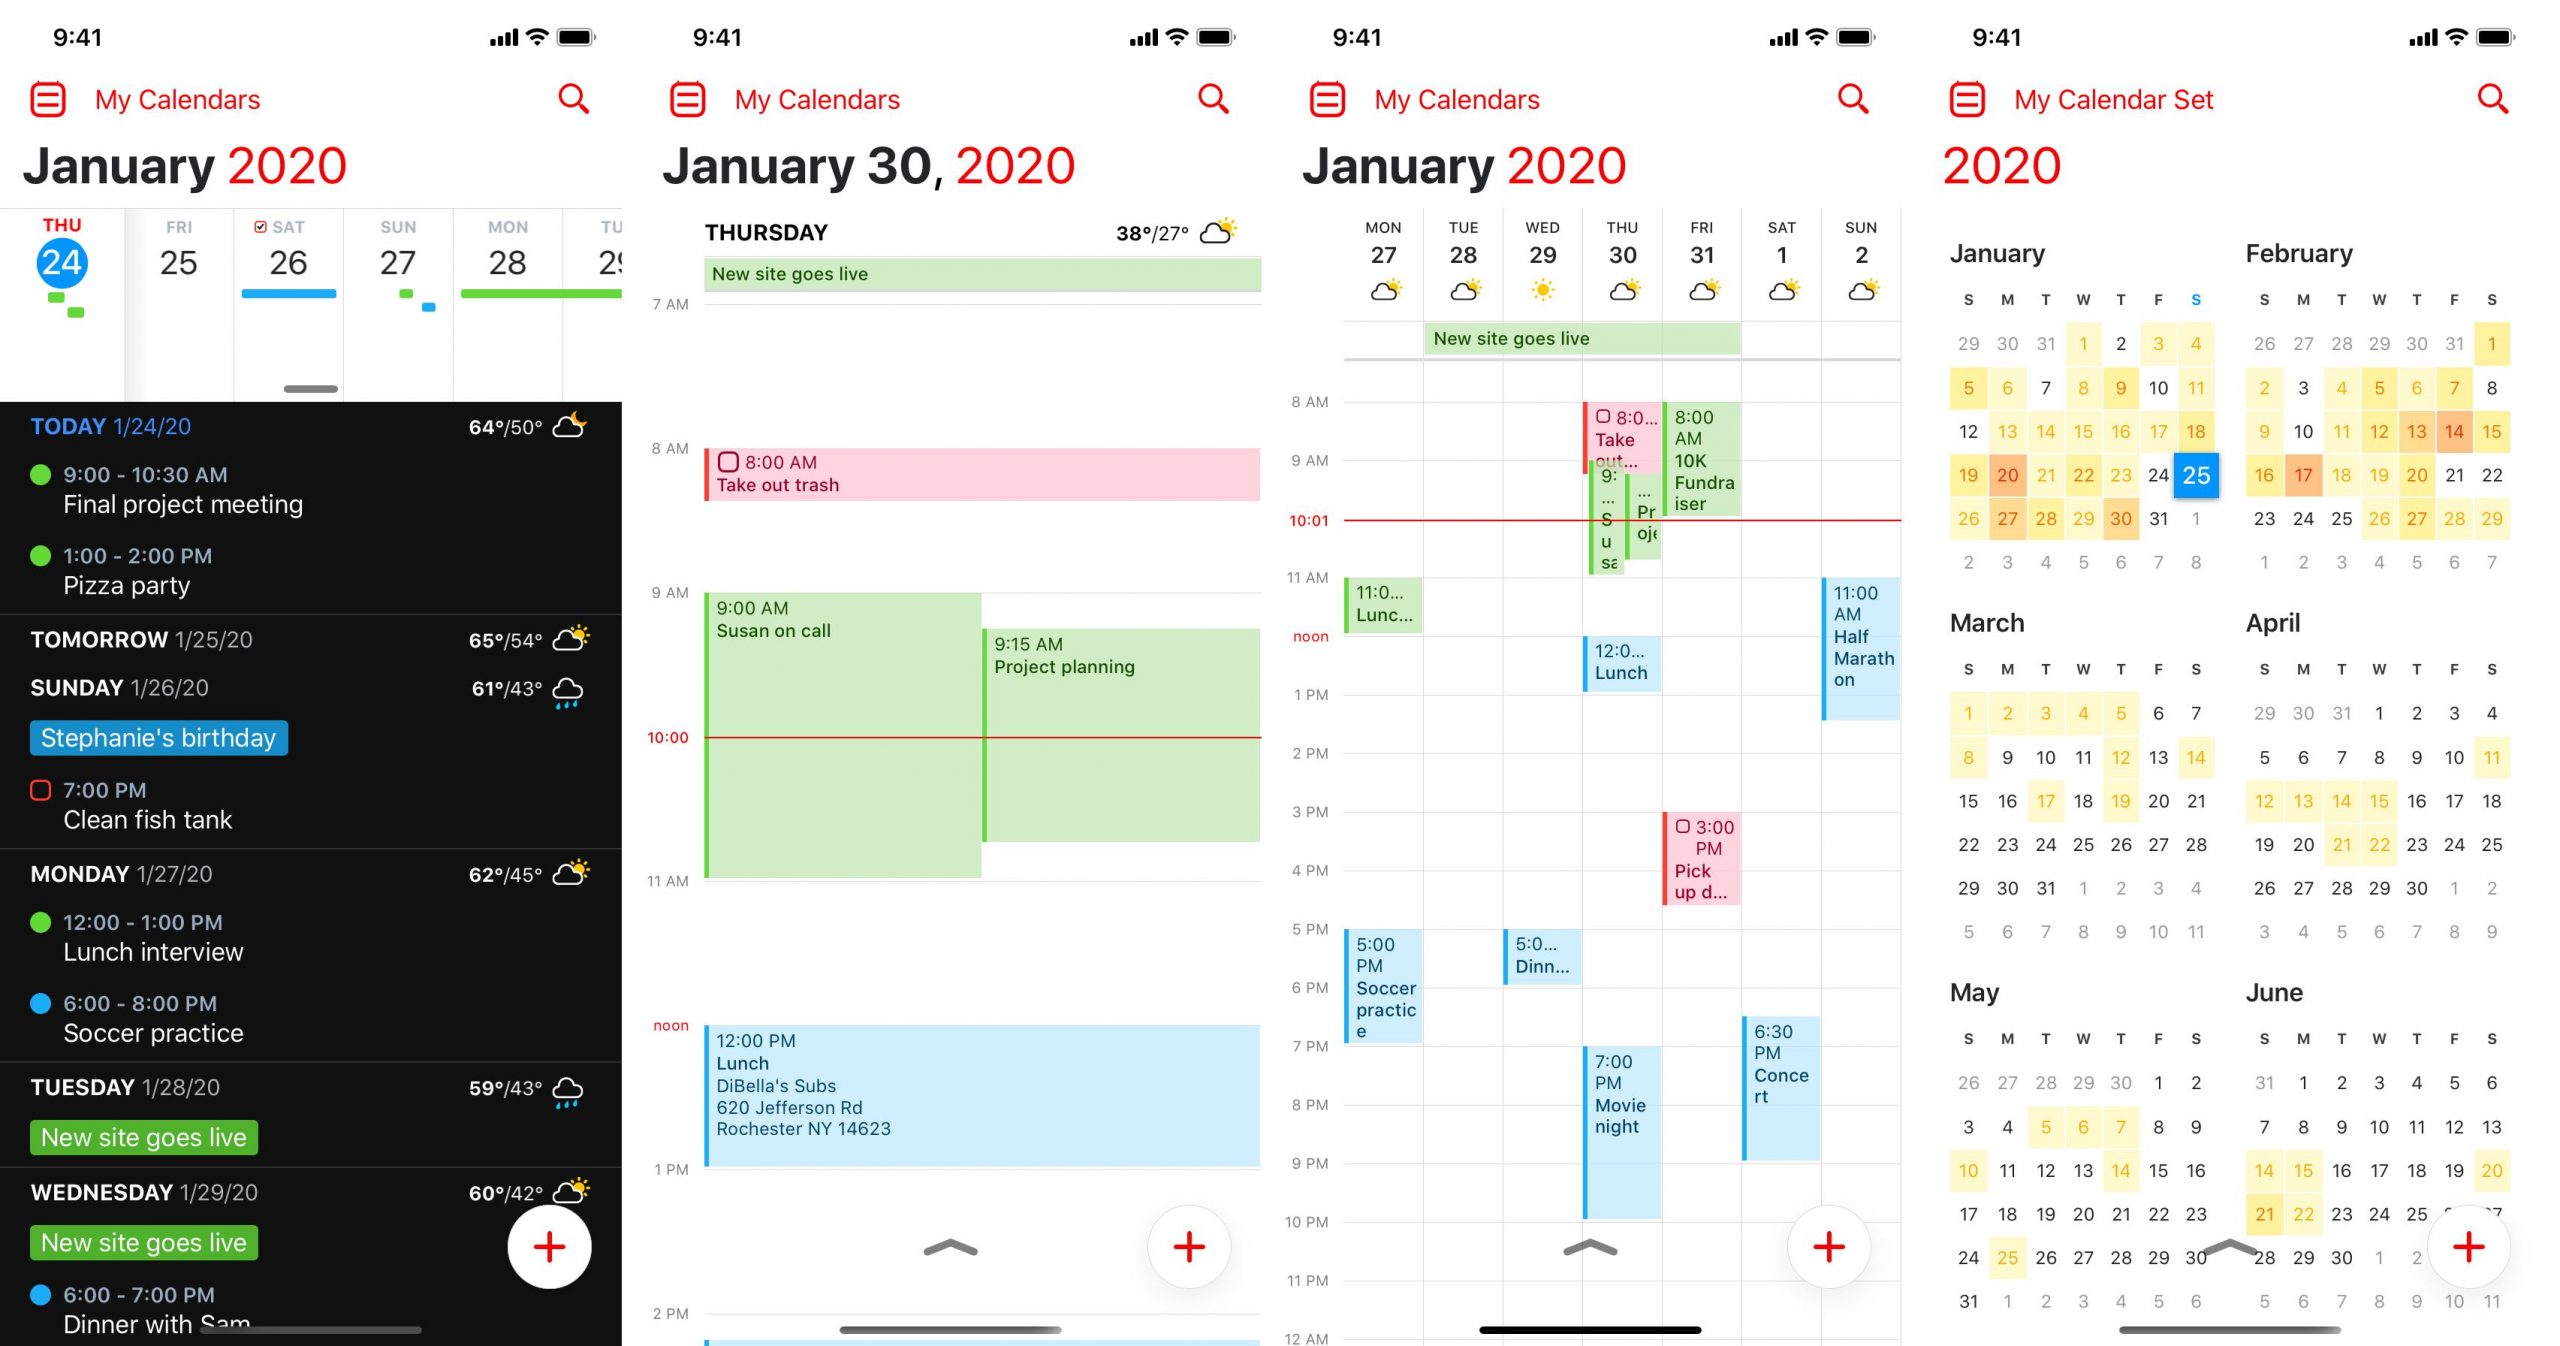 Ny Fantastisk presenterar kalender, väder, mötesförslag & amp; 3 till